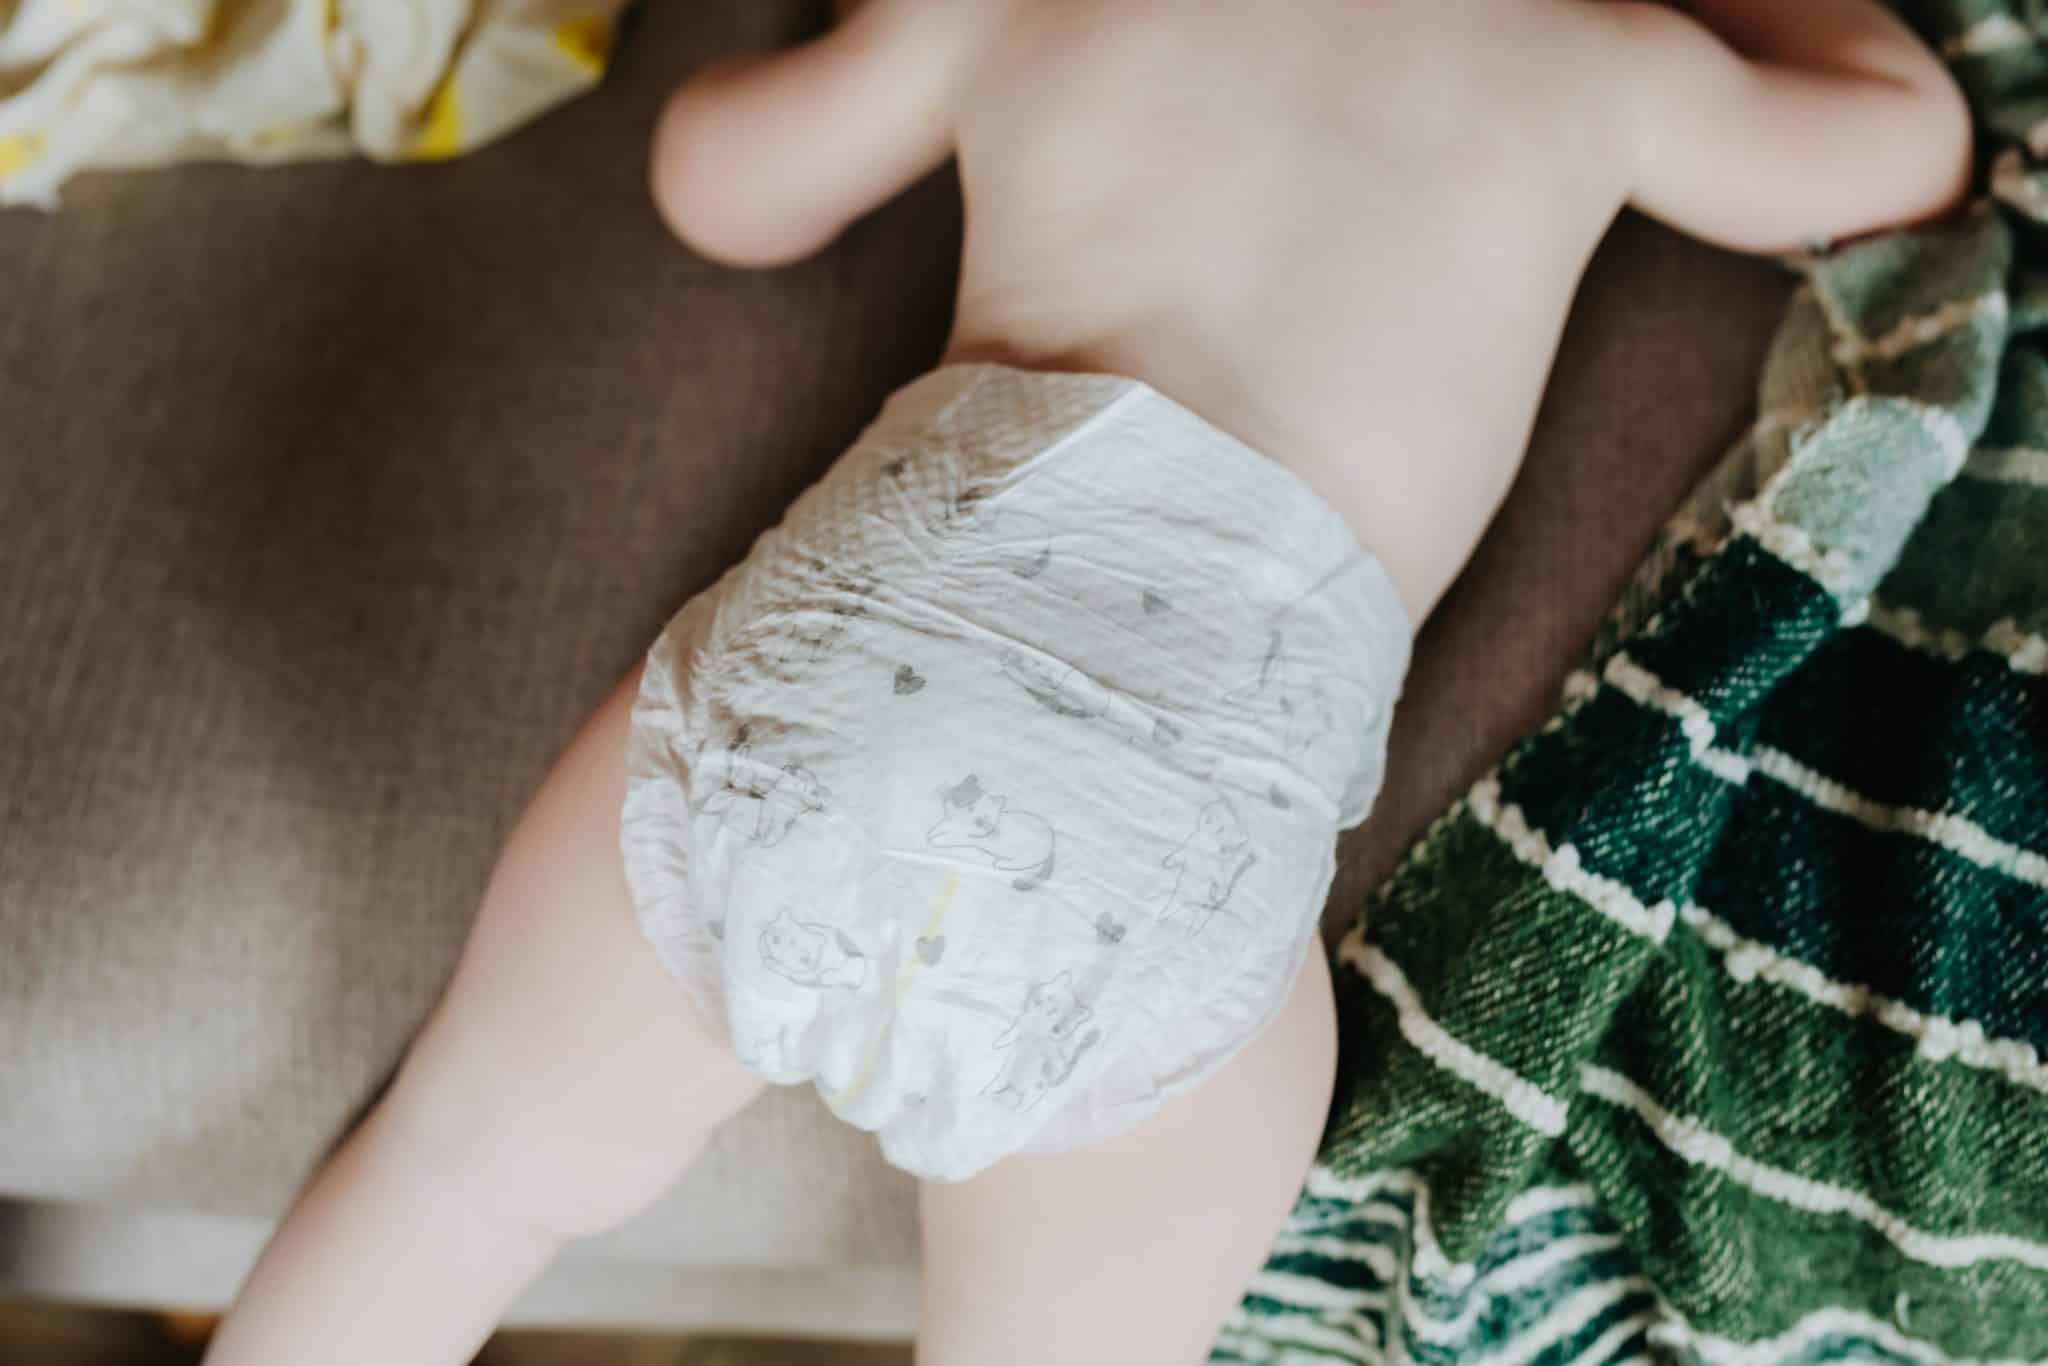 Biolane, Lotus baby : bon plan sur ces couches à prix cassés - Parole de  mamans